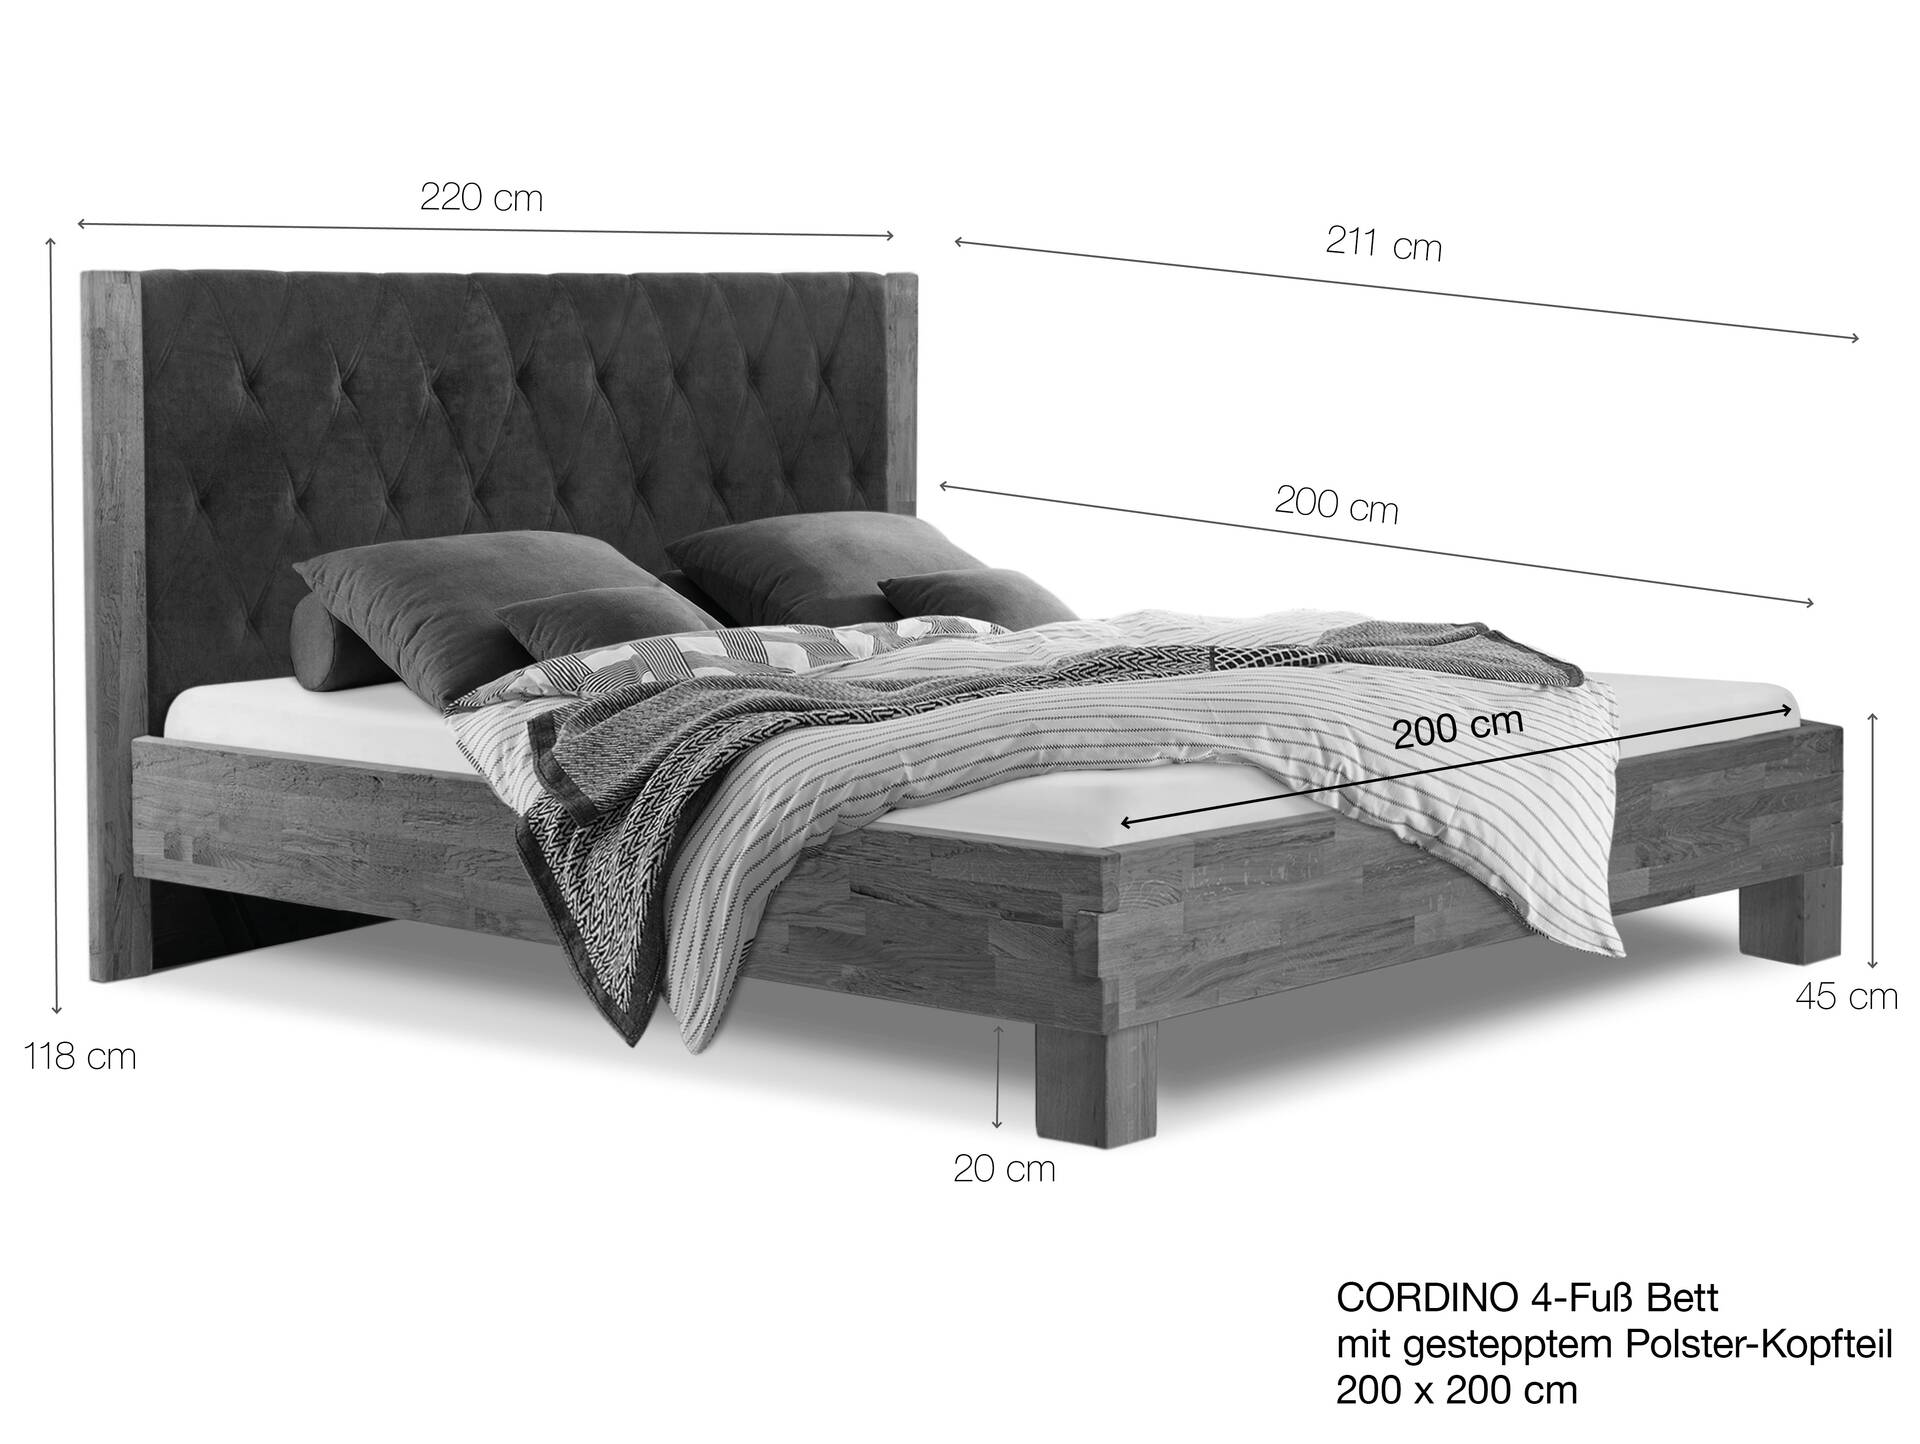 CORDINO 4-Fuß-Bett aus Eiche mit gestepptem Polster-Kopfteil, Material Massivholz 200 x 200 cm | Eiche lackiert | Stoff Anthrazit | gebürstet